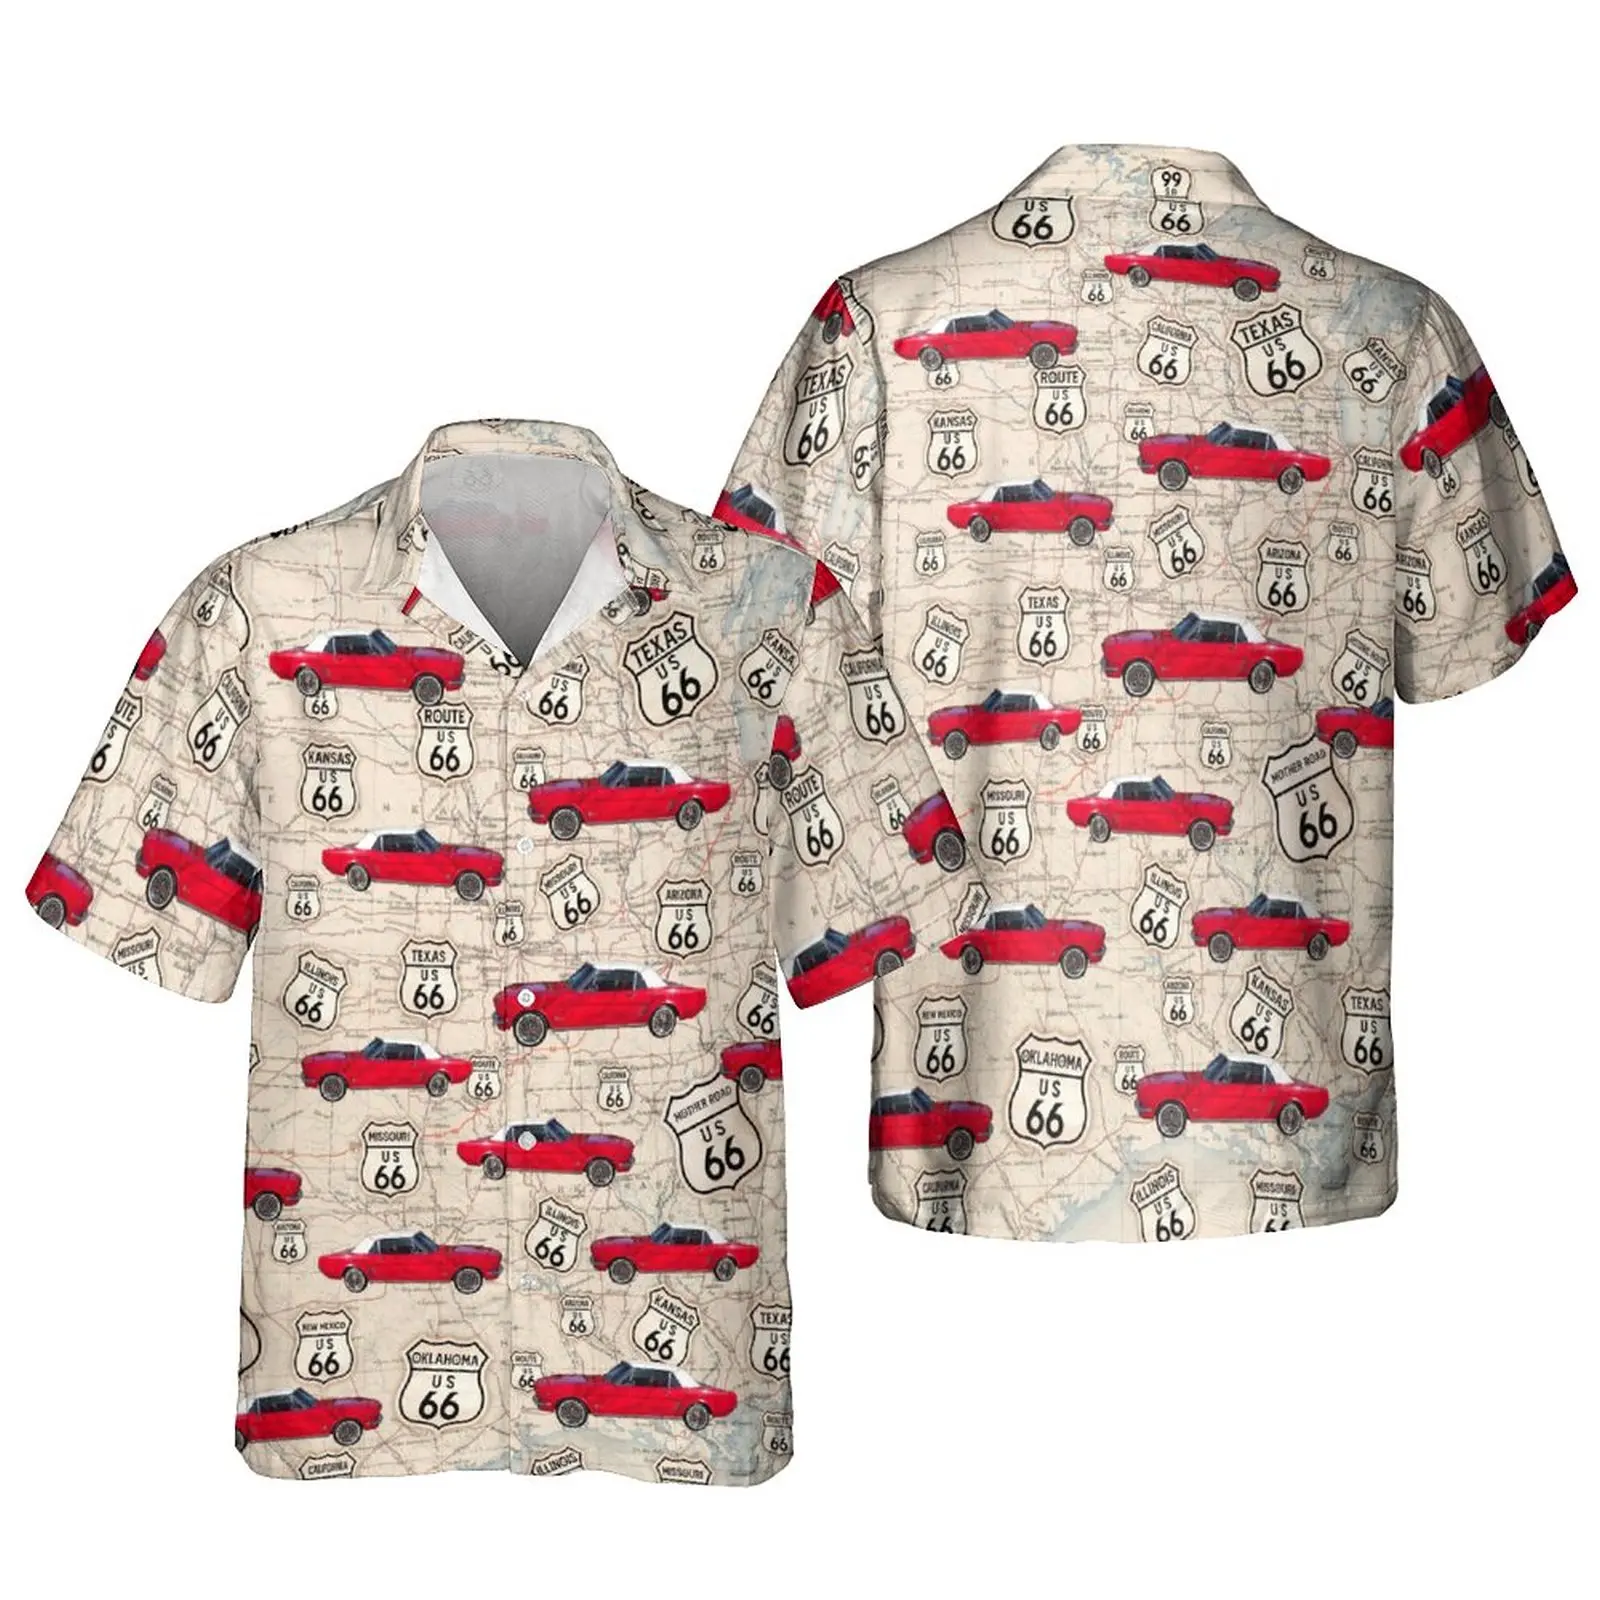 

Jumeast, винтажные мужские рубашки с рисунком автомобиля, армия США, воздушный корпус, гавайская пляжная рубашка, блузки, тропическая молодежная одежда для кемпера